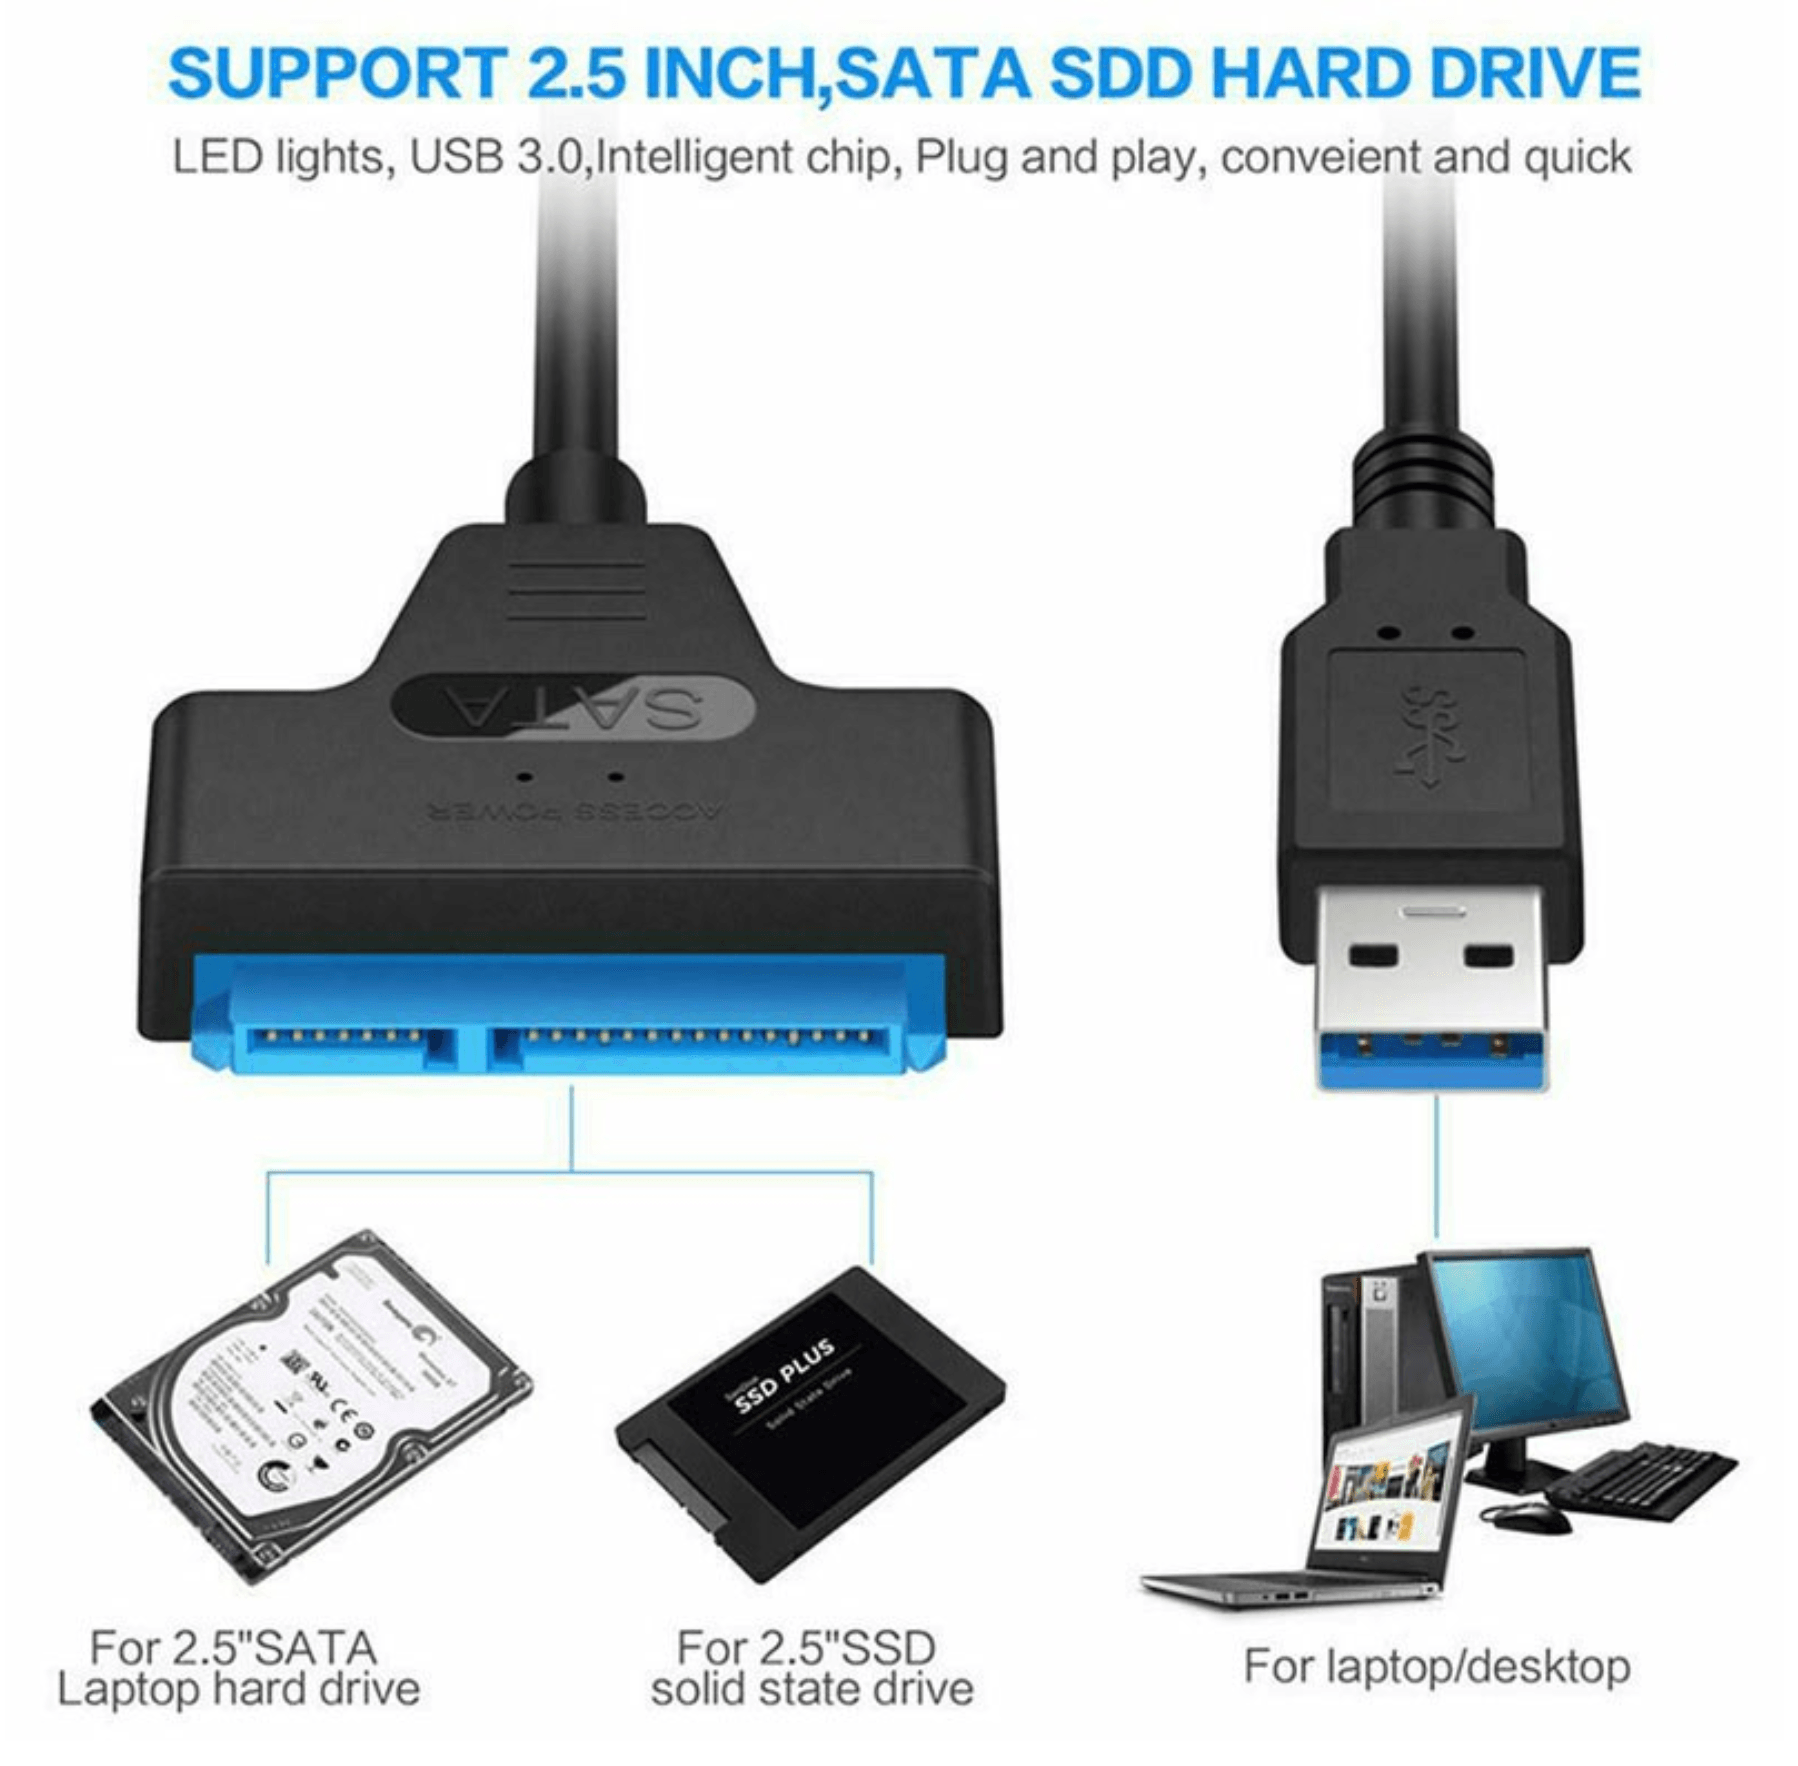 Cablu USB 3.0 la SATA 22 pini, 2.5 inch (45 mm), pentru hard HDD/SSD cu adaptor de conectare, BBL1370